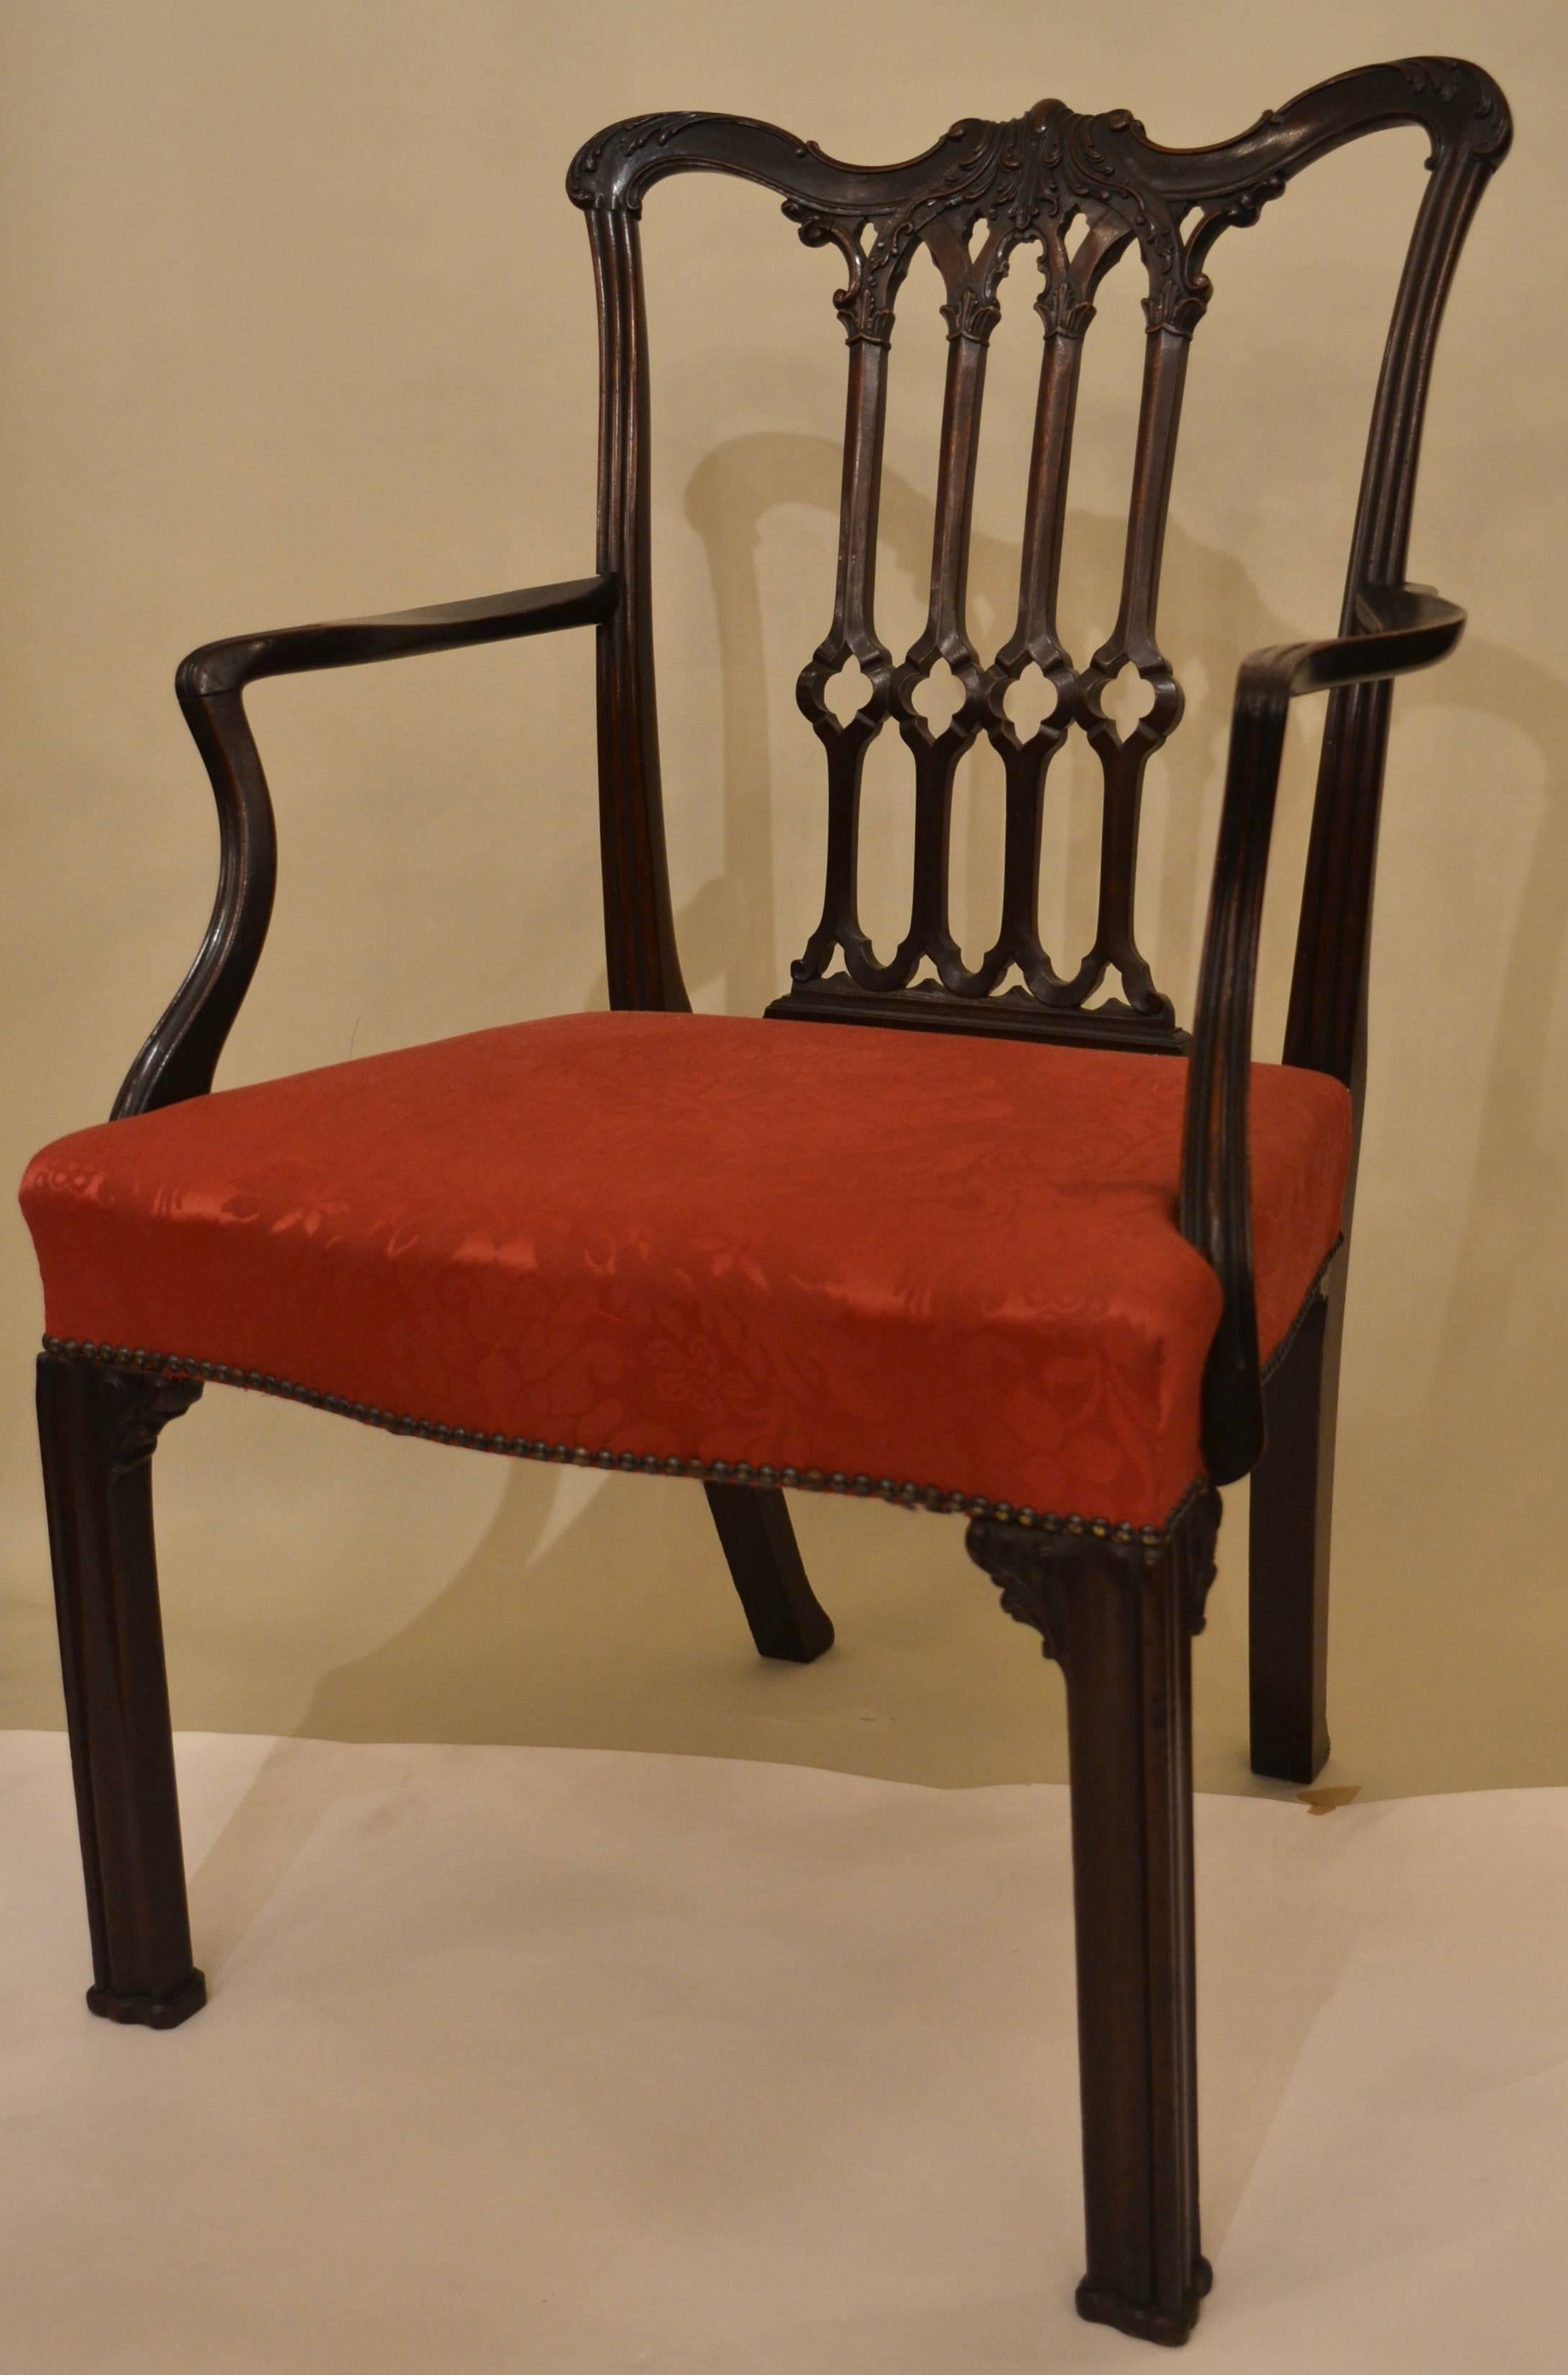 Ein schönes Beispiel für einen Sessel aus der georgianischen Zeit.